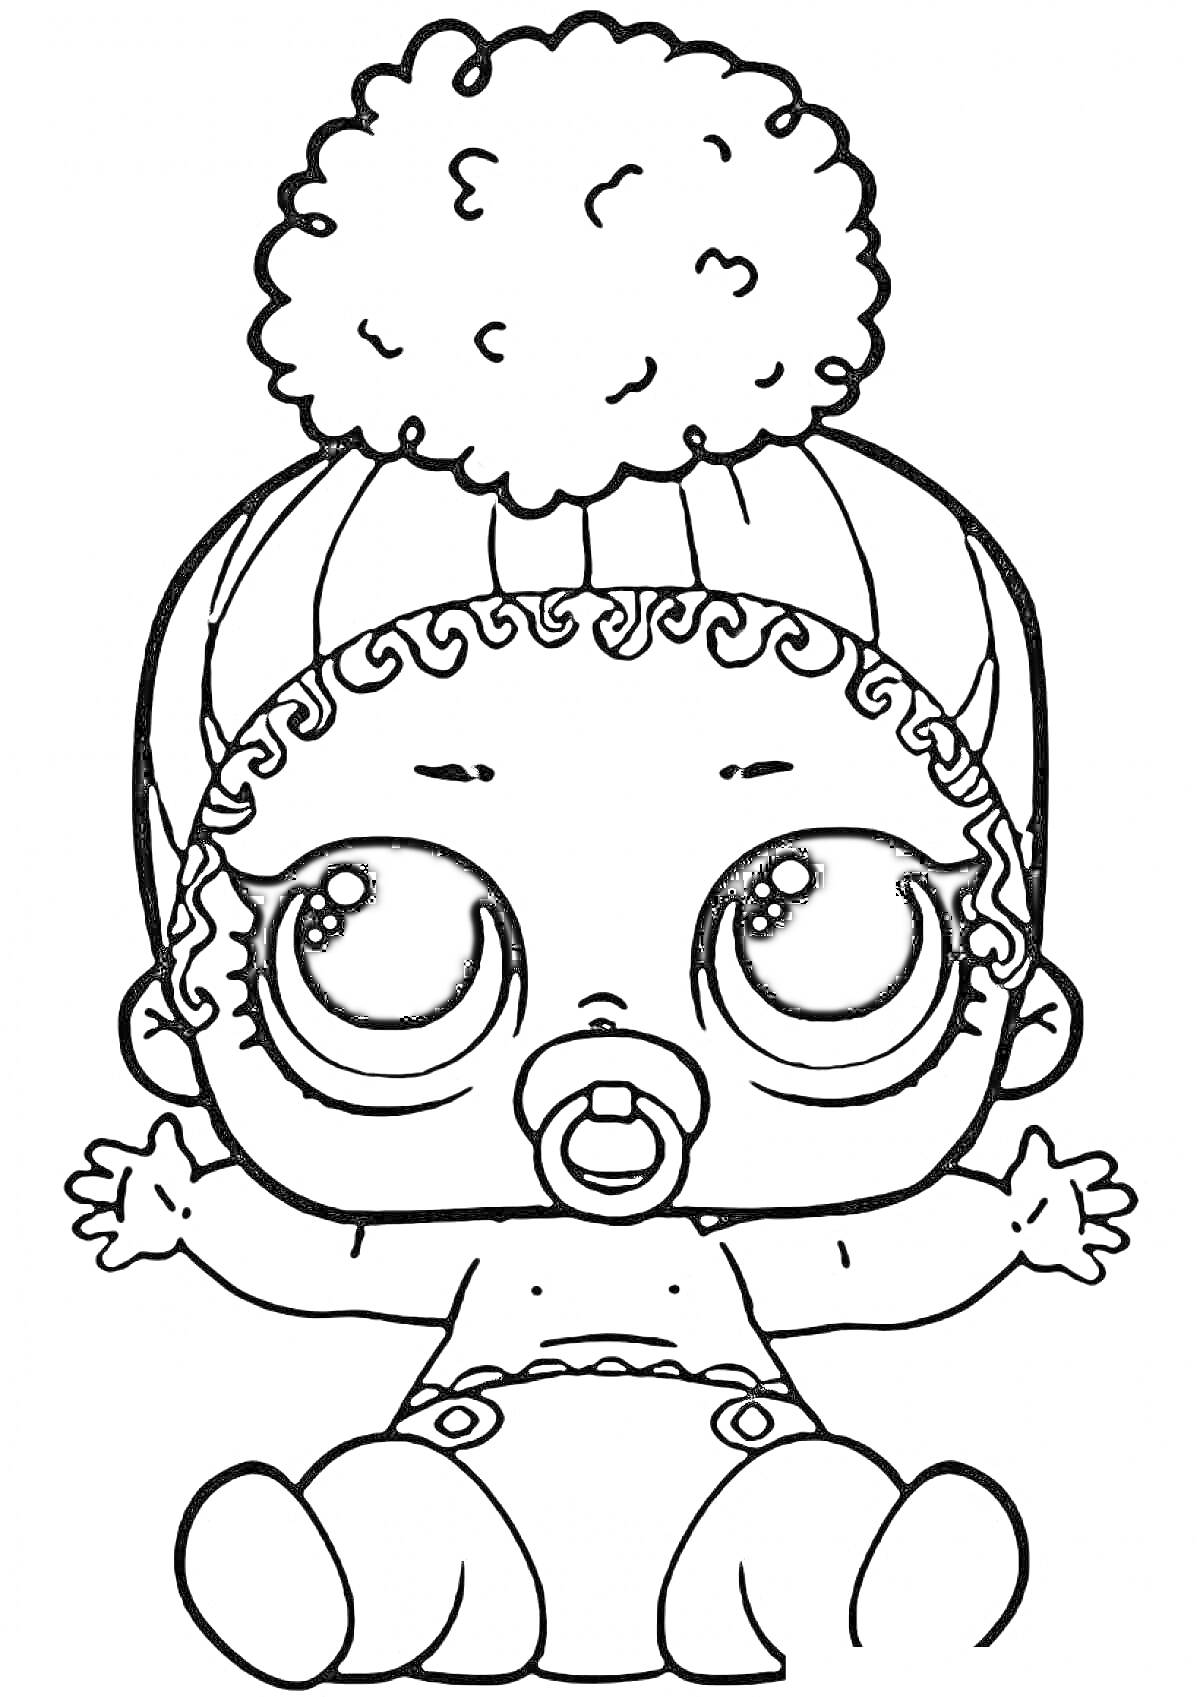 Раскраска Кукла ЛОЛ с большим бантом на голове и соской, сидящая в подгузнике